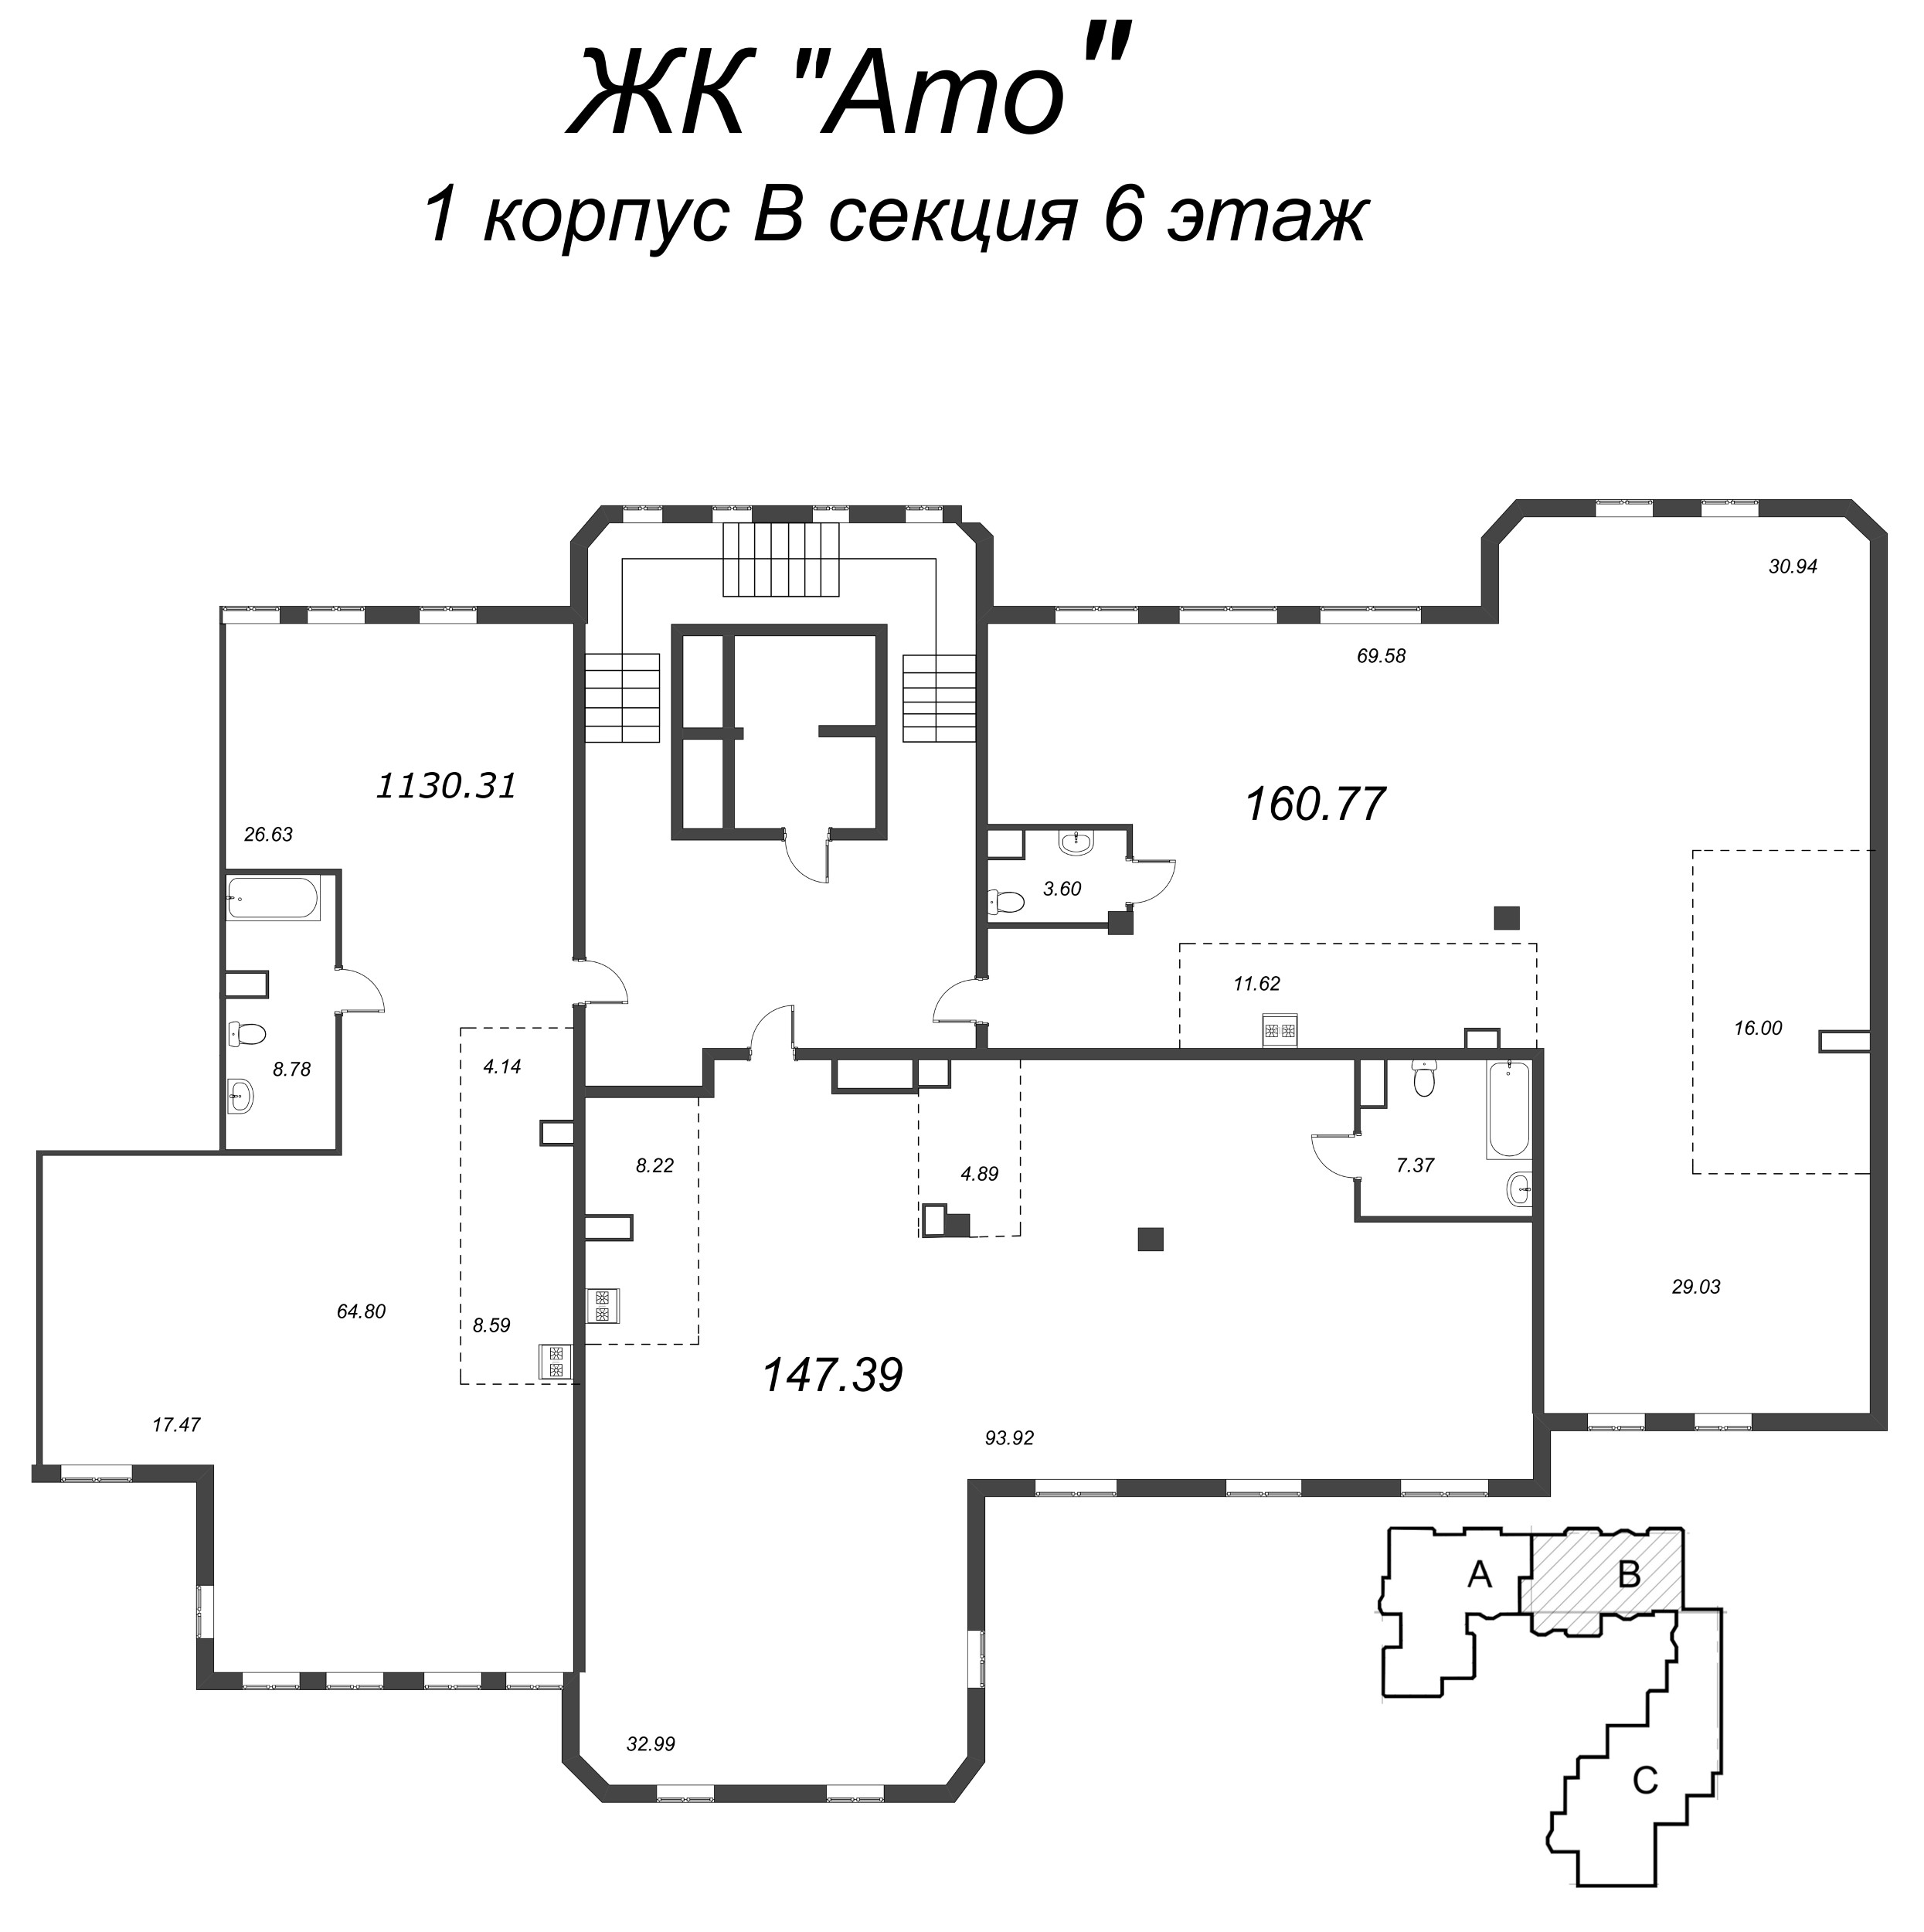 Квартира-студия, 147.17 м² в ЖК "Amo" - планировка этажа